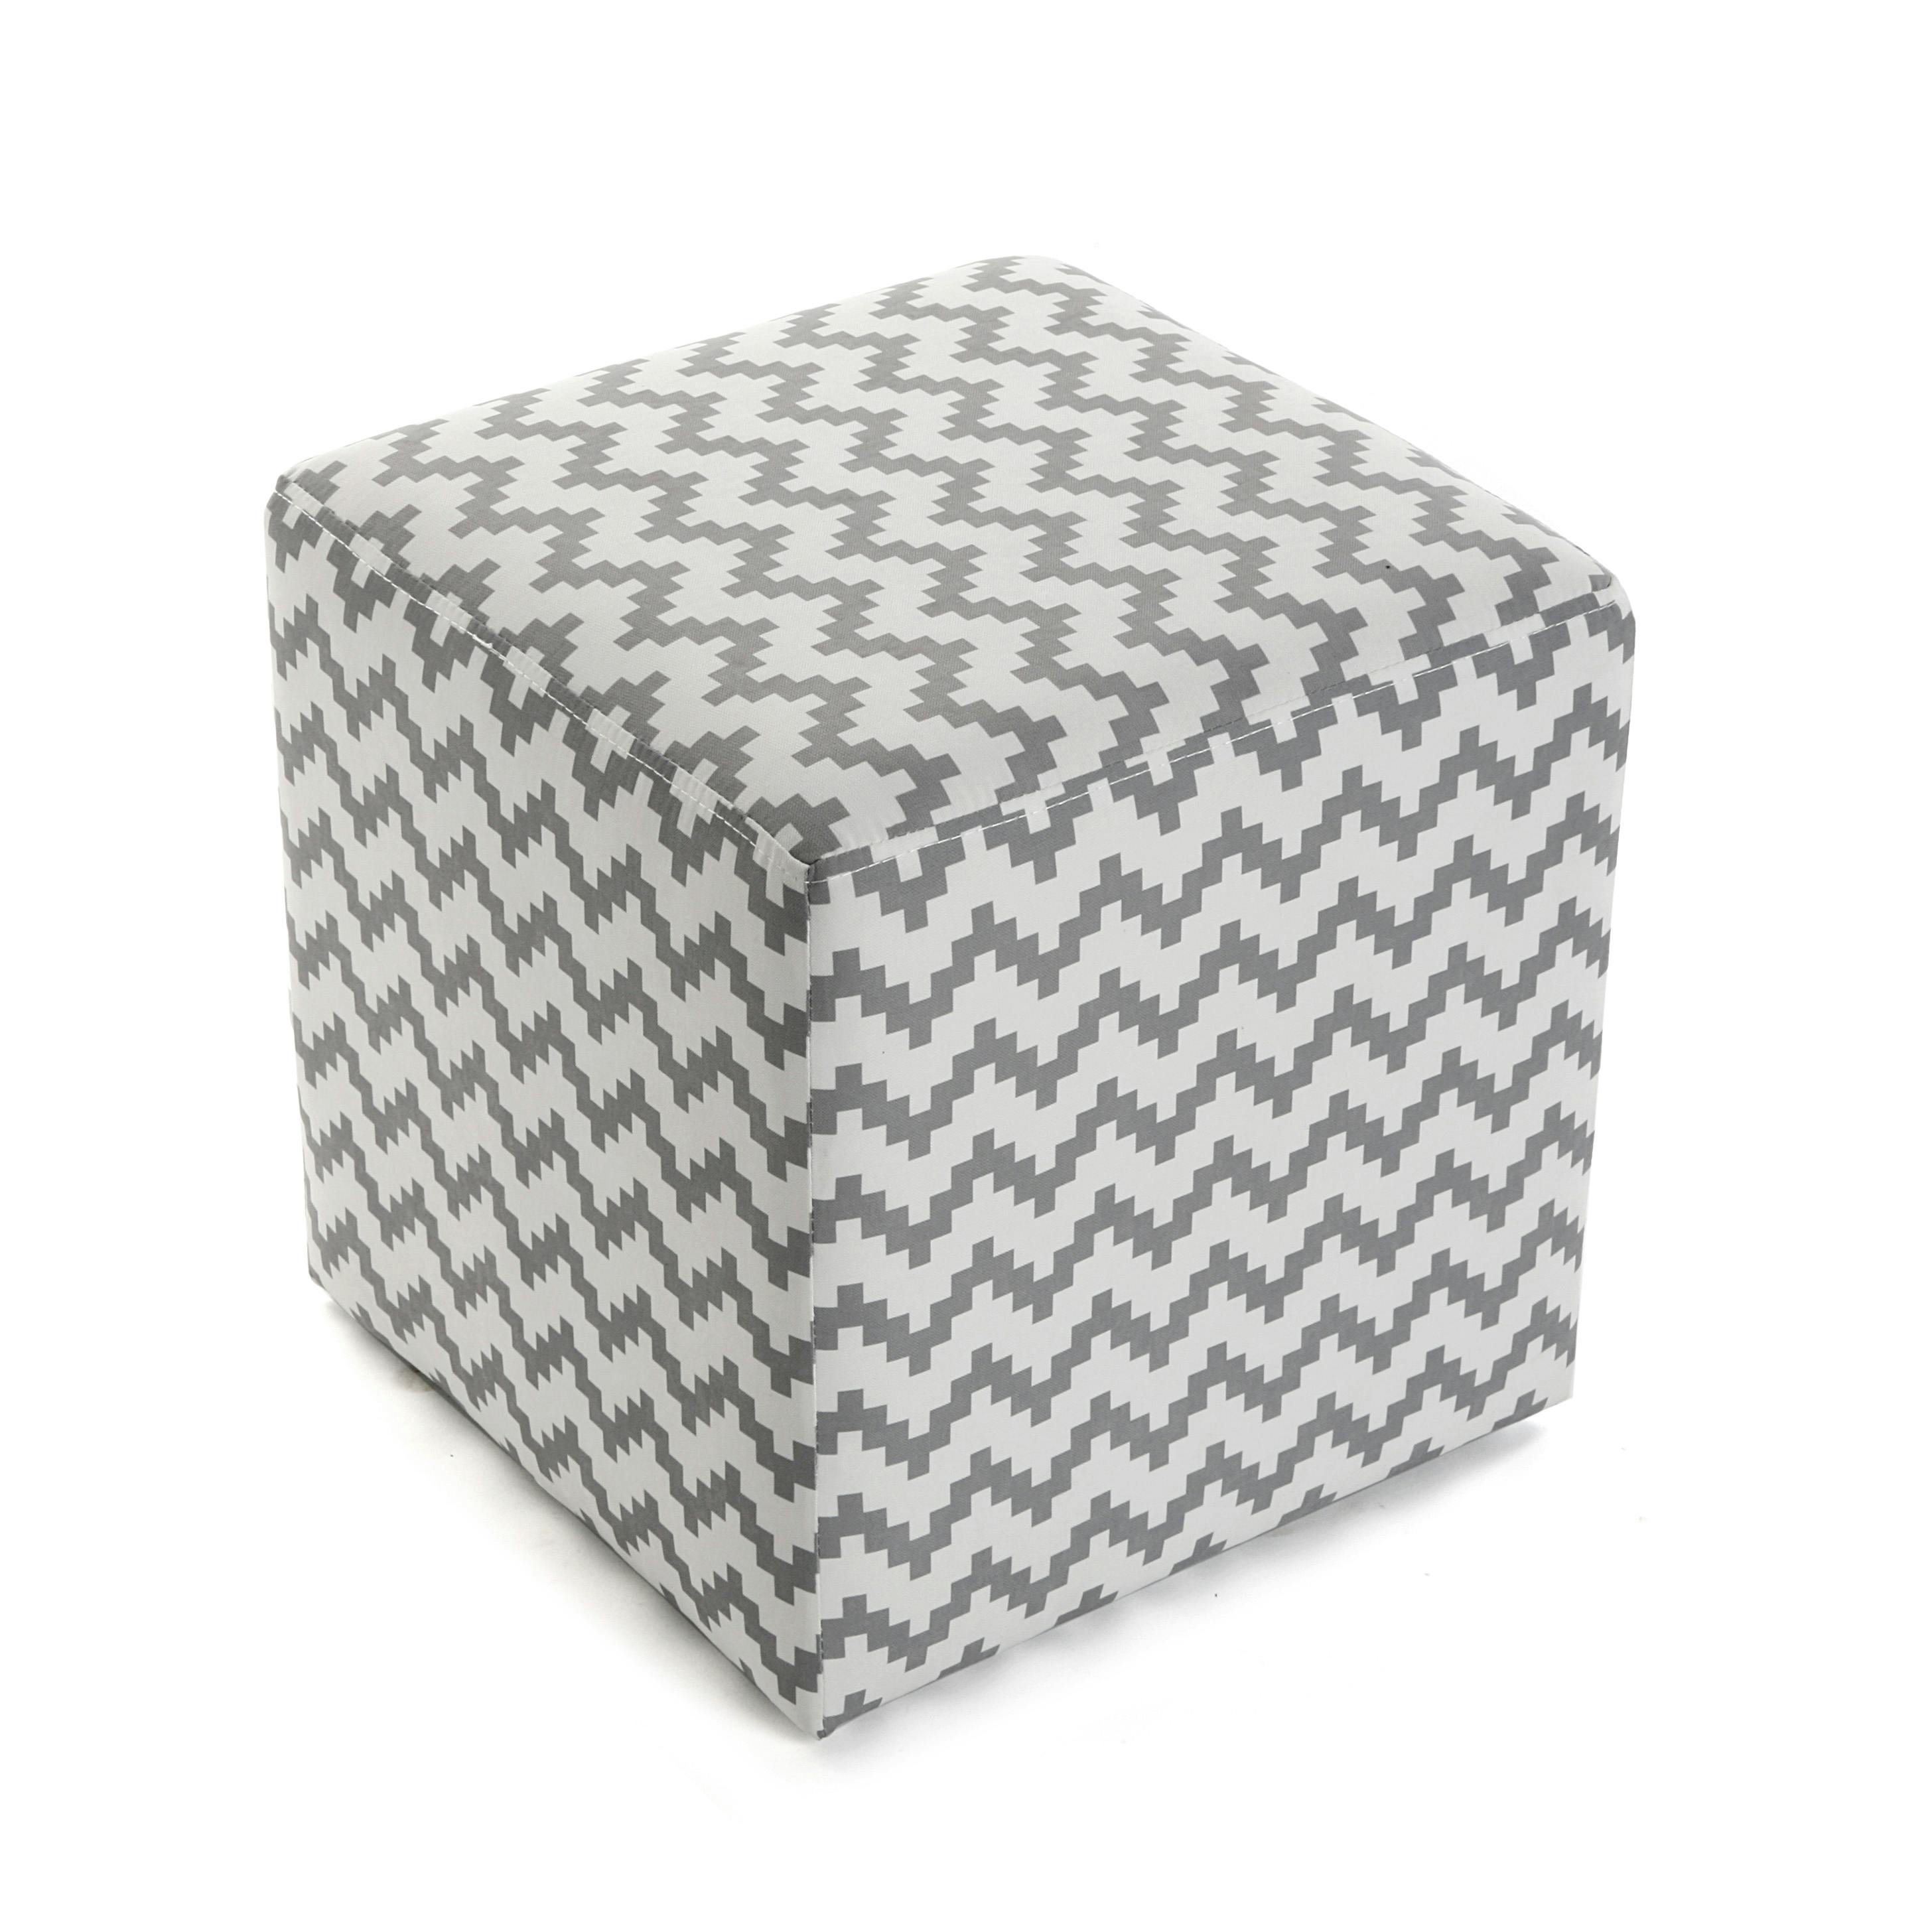 Pouf de Forme Cubique 42 x 42 cm fabriqué en Coton Marron et Gris